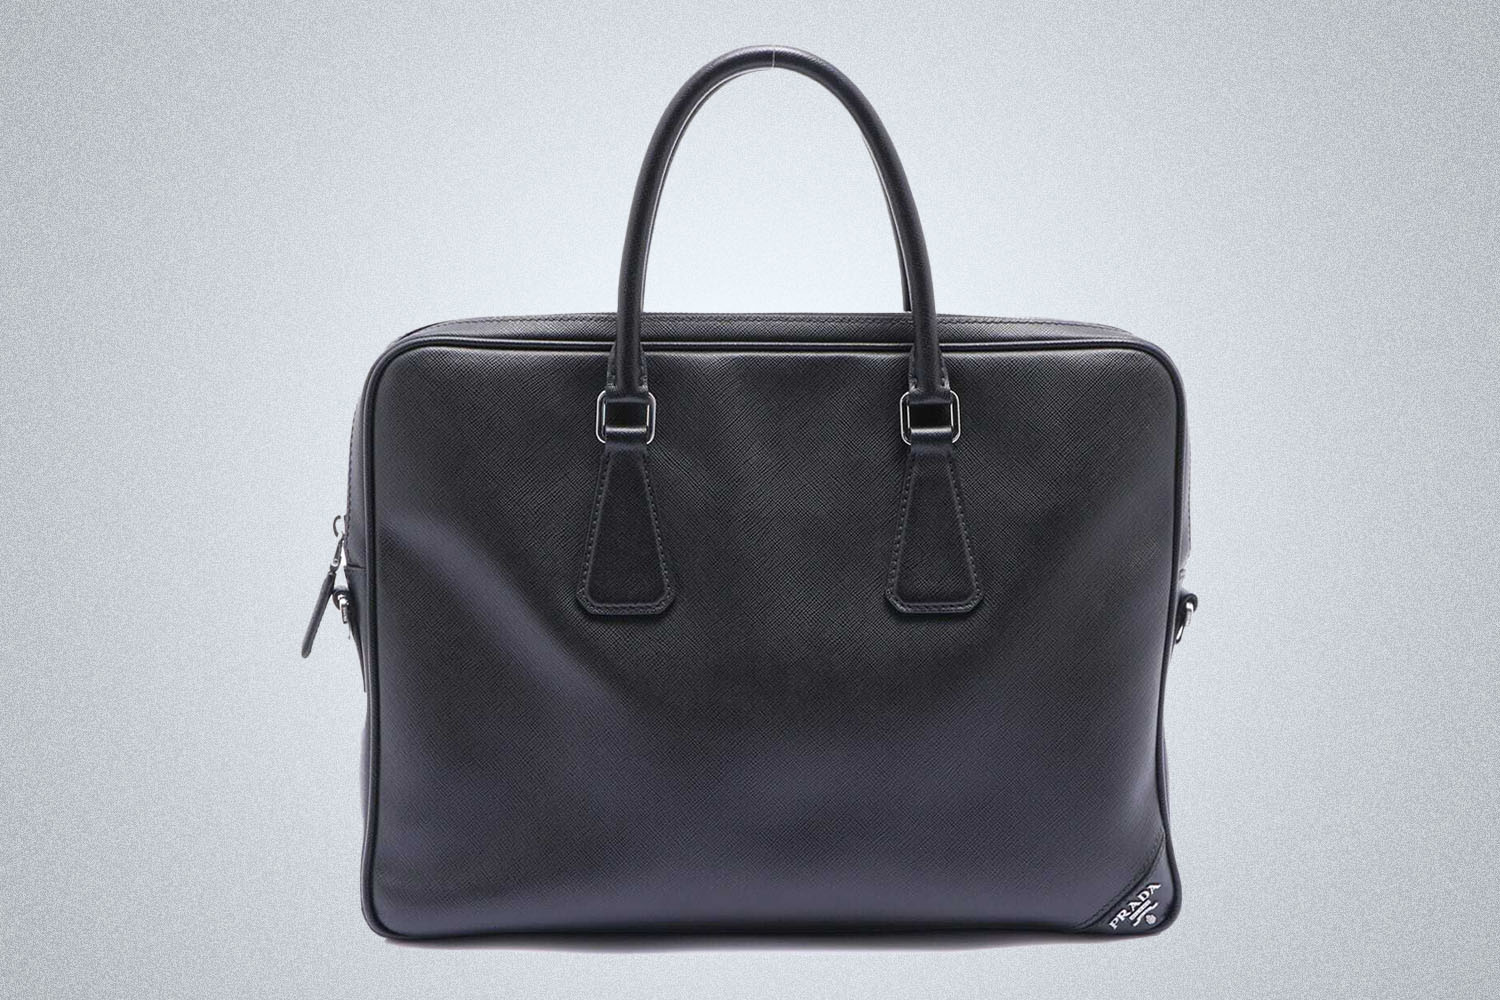 a Prada travel bag on a grey background